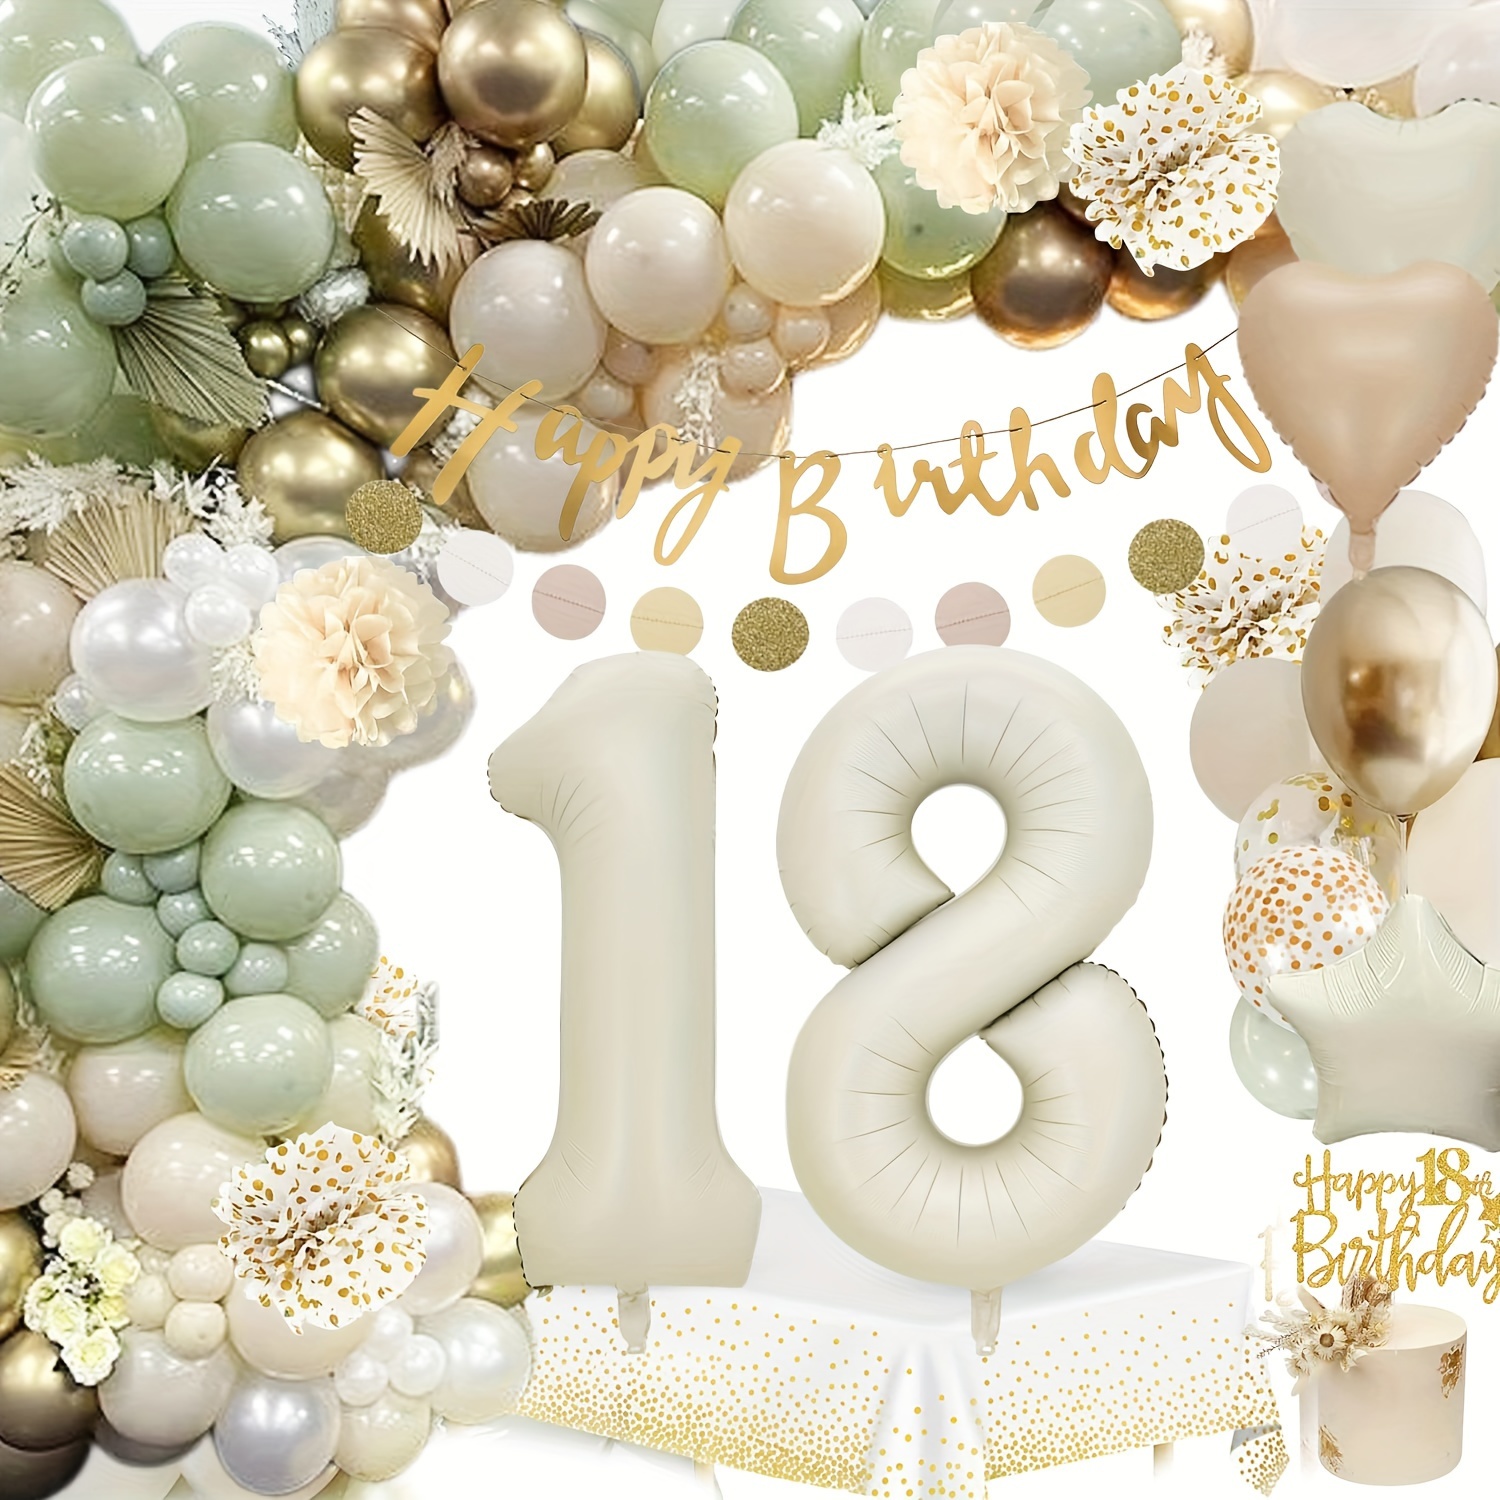 Kit de decoración de fiesta de cumpleaños número 18, color negro y dorado  con purpurina de feliz cumpleaños 18, globos colgantes de 18 cumpleaños  para